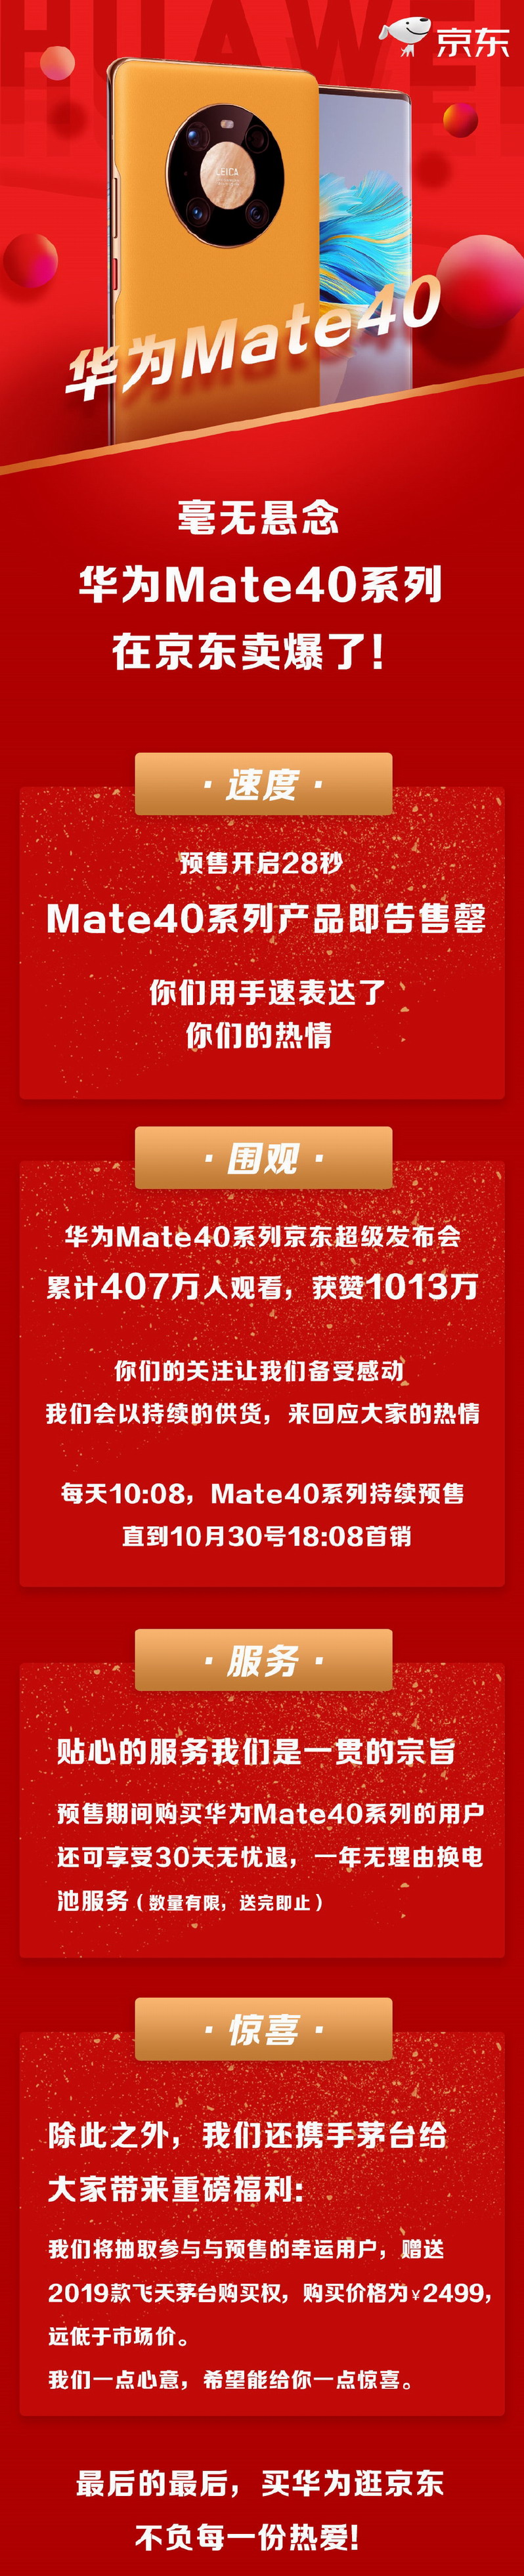 Mate40系列卖爆 余承东暗讽iPhone12落后Mate40两代